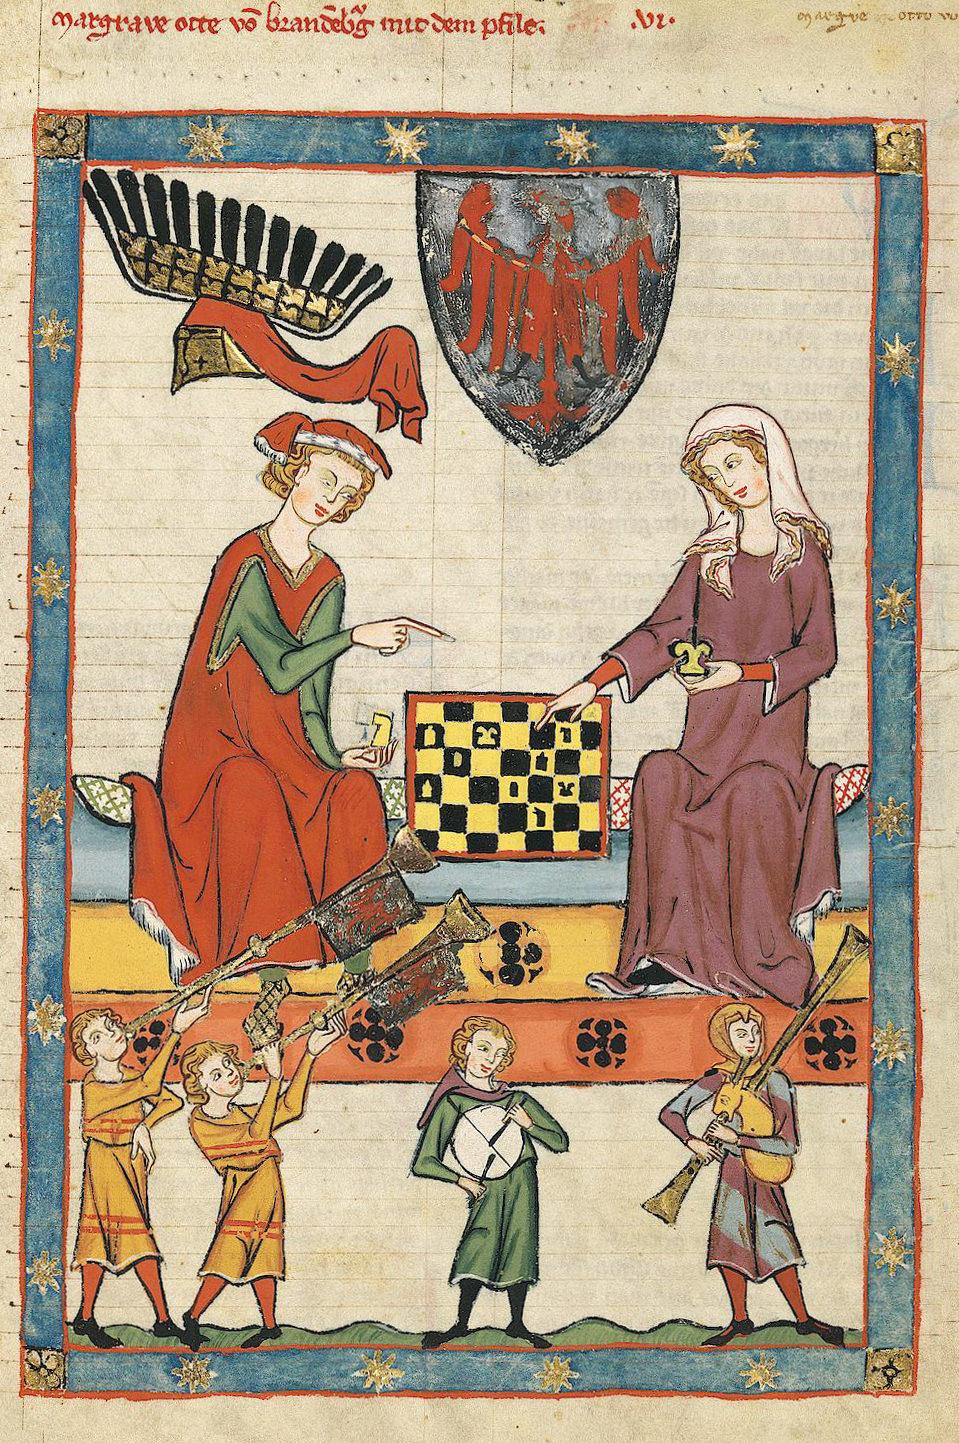 Xadrez através dos séculos: A origem e primeiros jogadores de destaque 